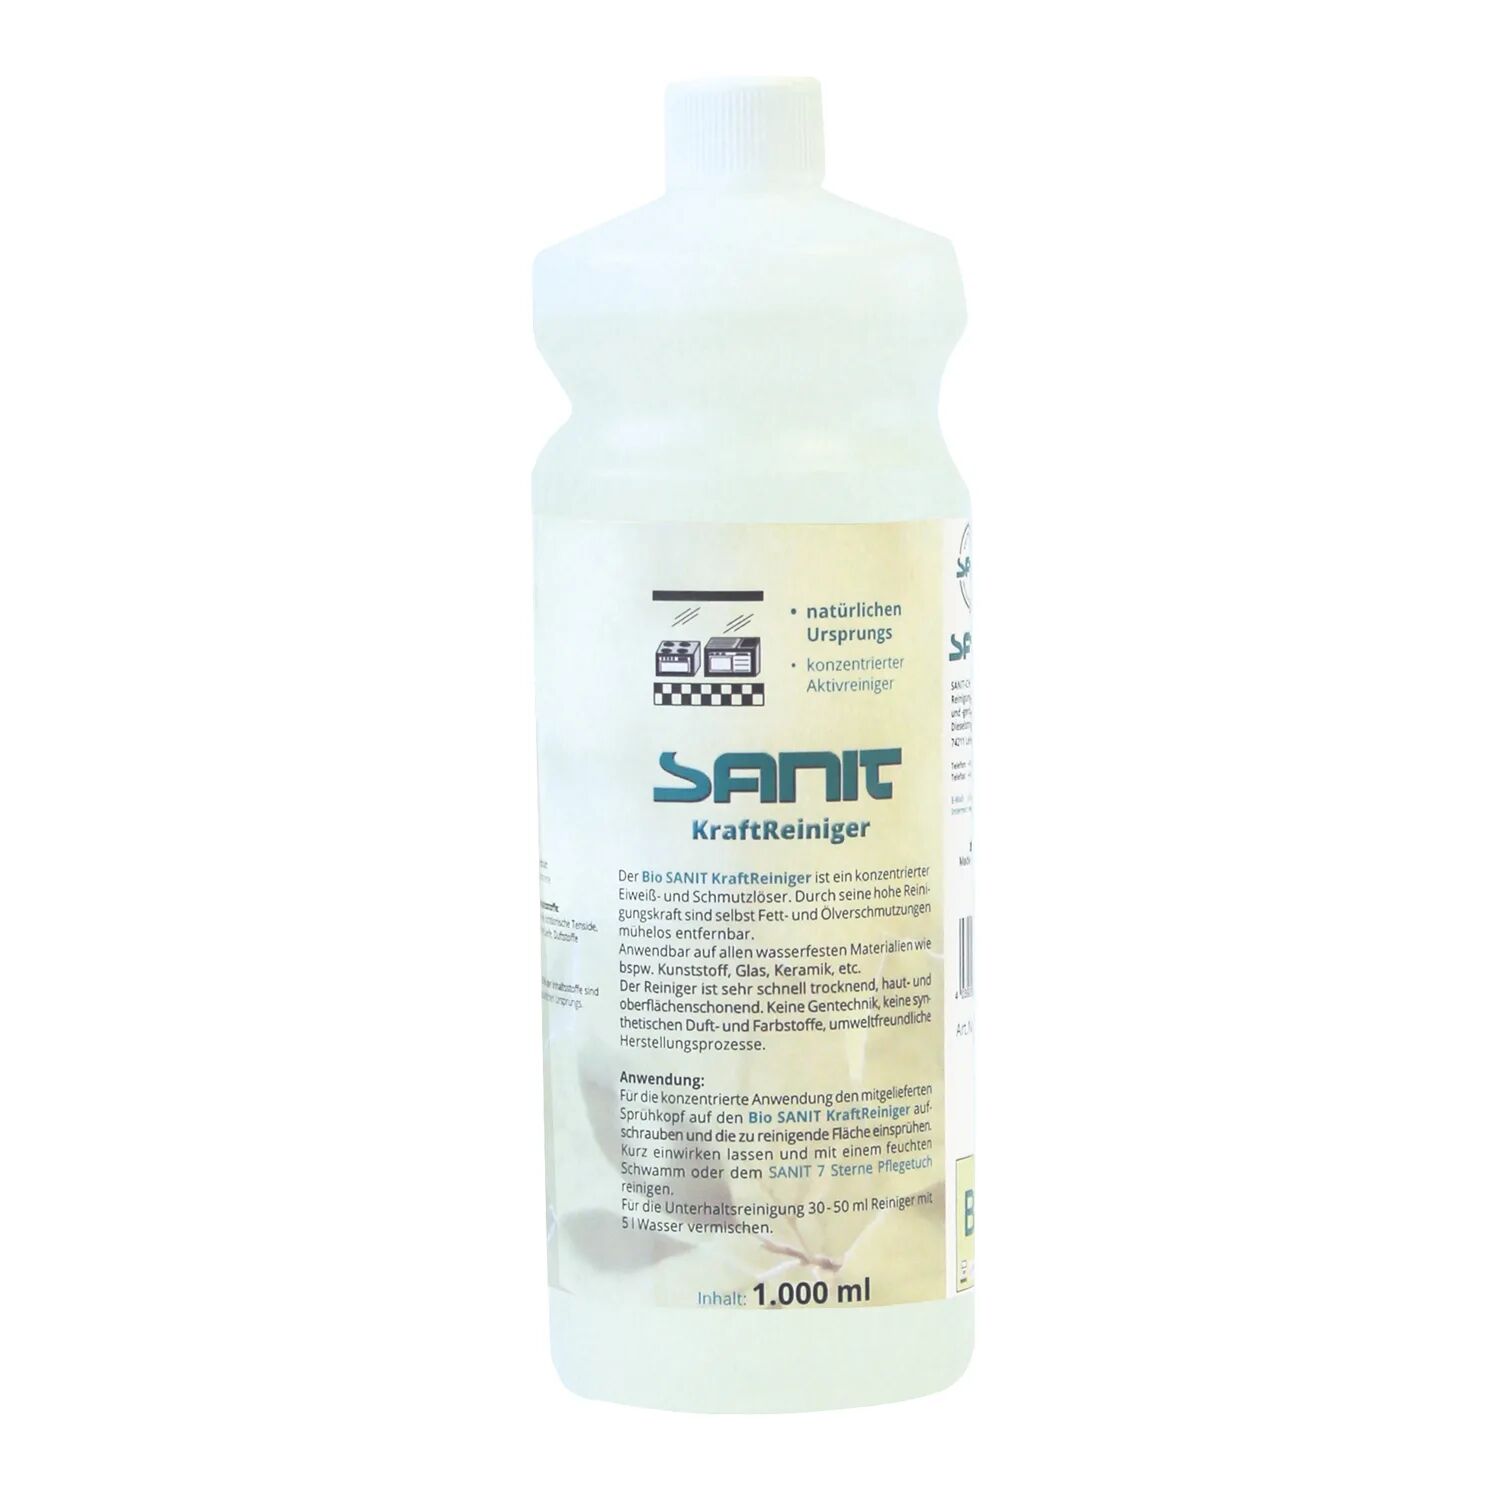 Sanit Bio SANIT KraftReiniger KraftReiniger 1000 ml  3360